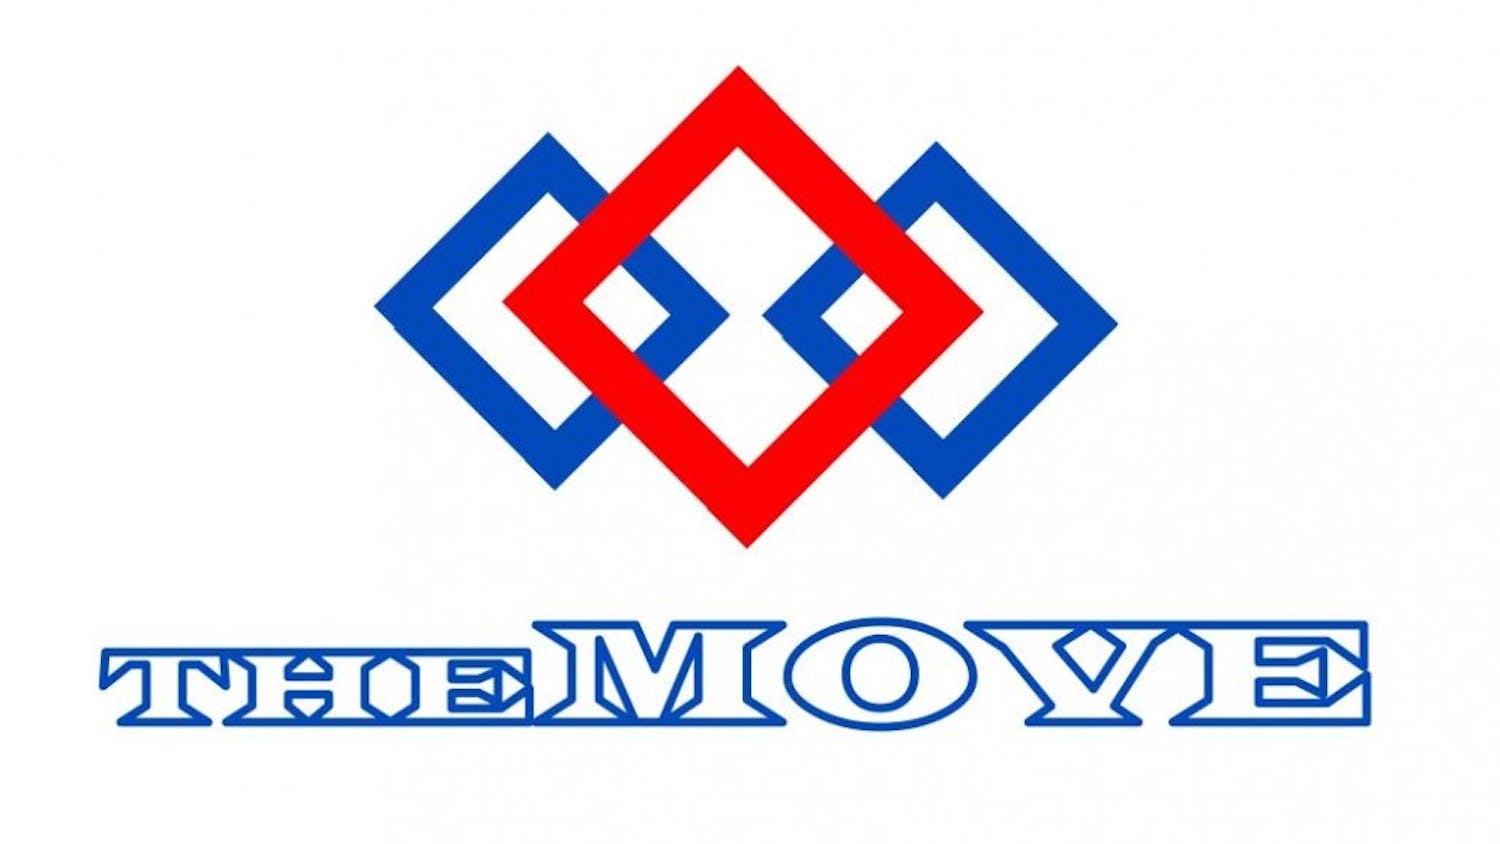 TheMove Logo